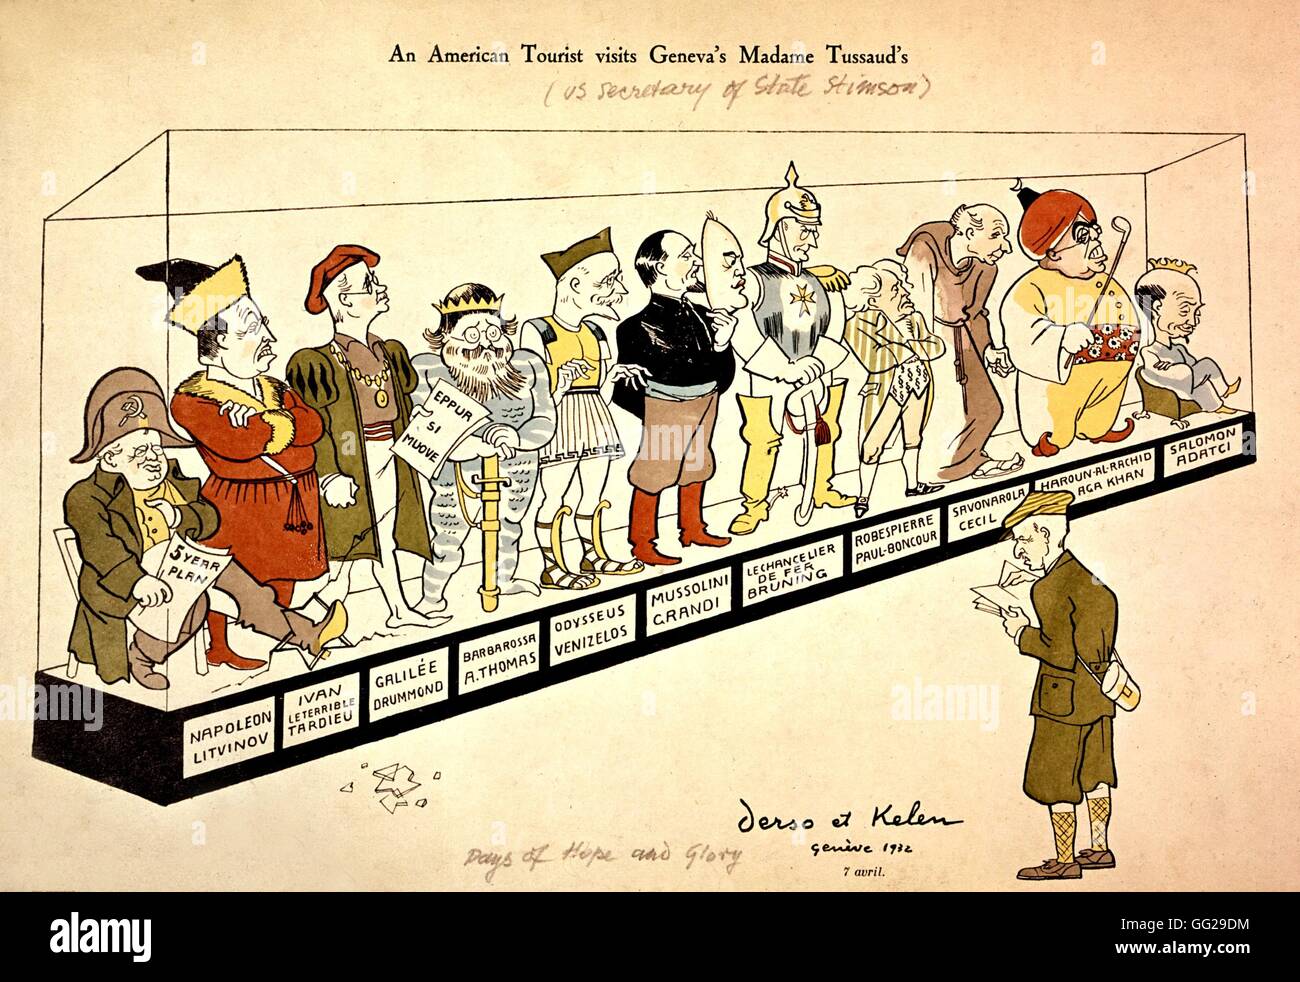 Vignetta satirica da Derso e Kelen. Atteggiamento americano di fronte ai delegati della Lega delle Nazioni Aprile 7, 1932 a New York. Raccolta Kelen Foto Stock